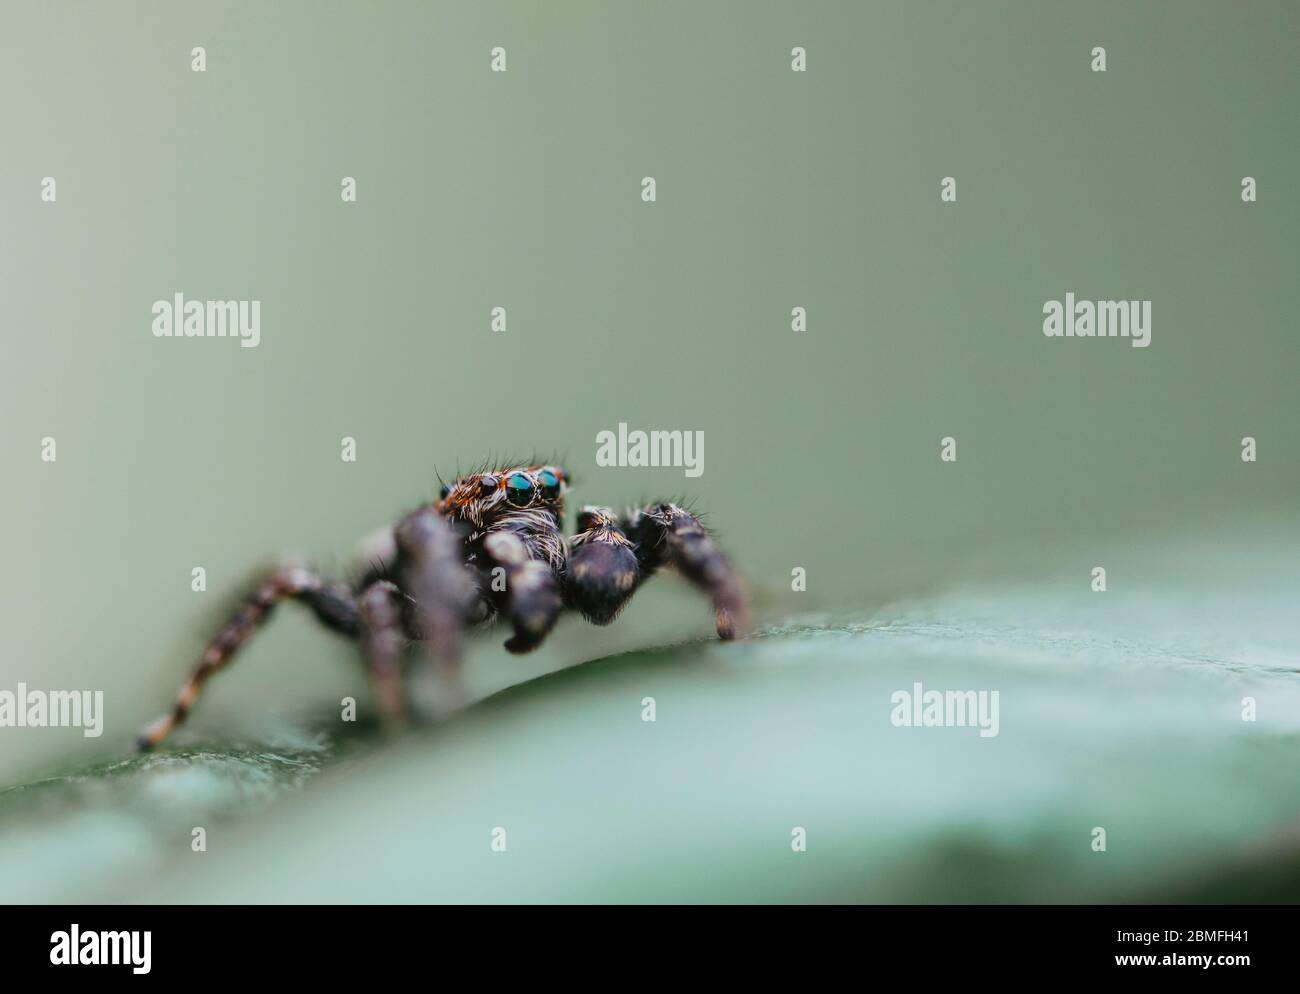 Eine springende Spinne auf einem grünen Pflanzenblatt Stockfoto